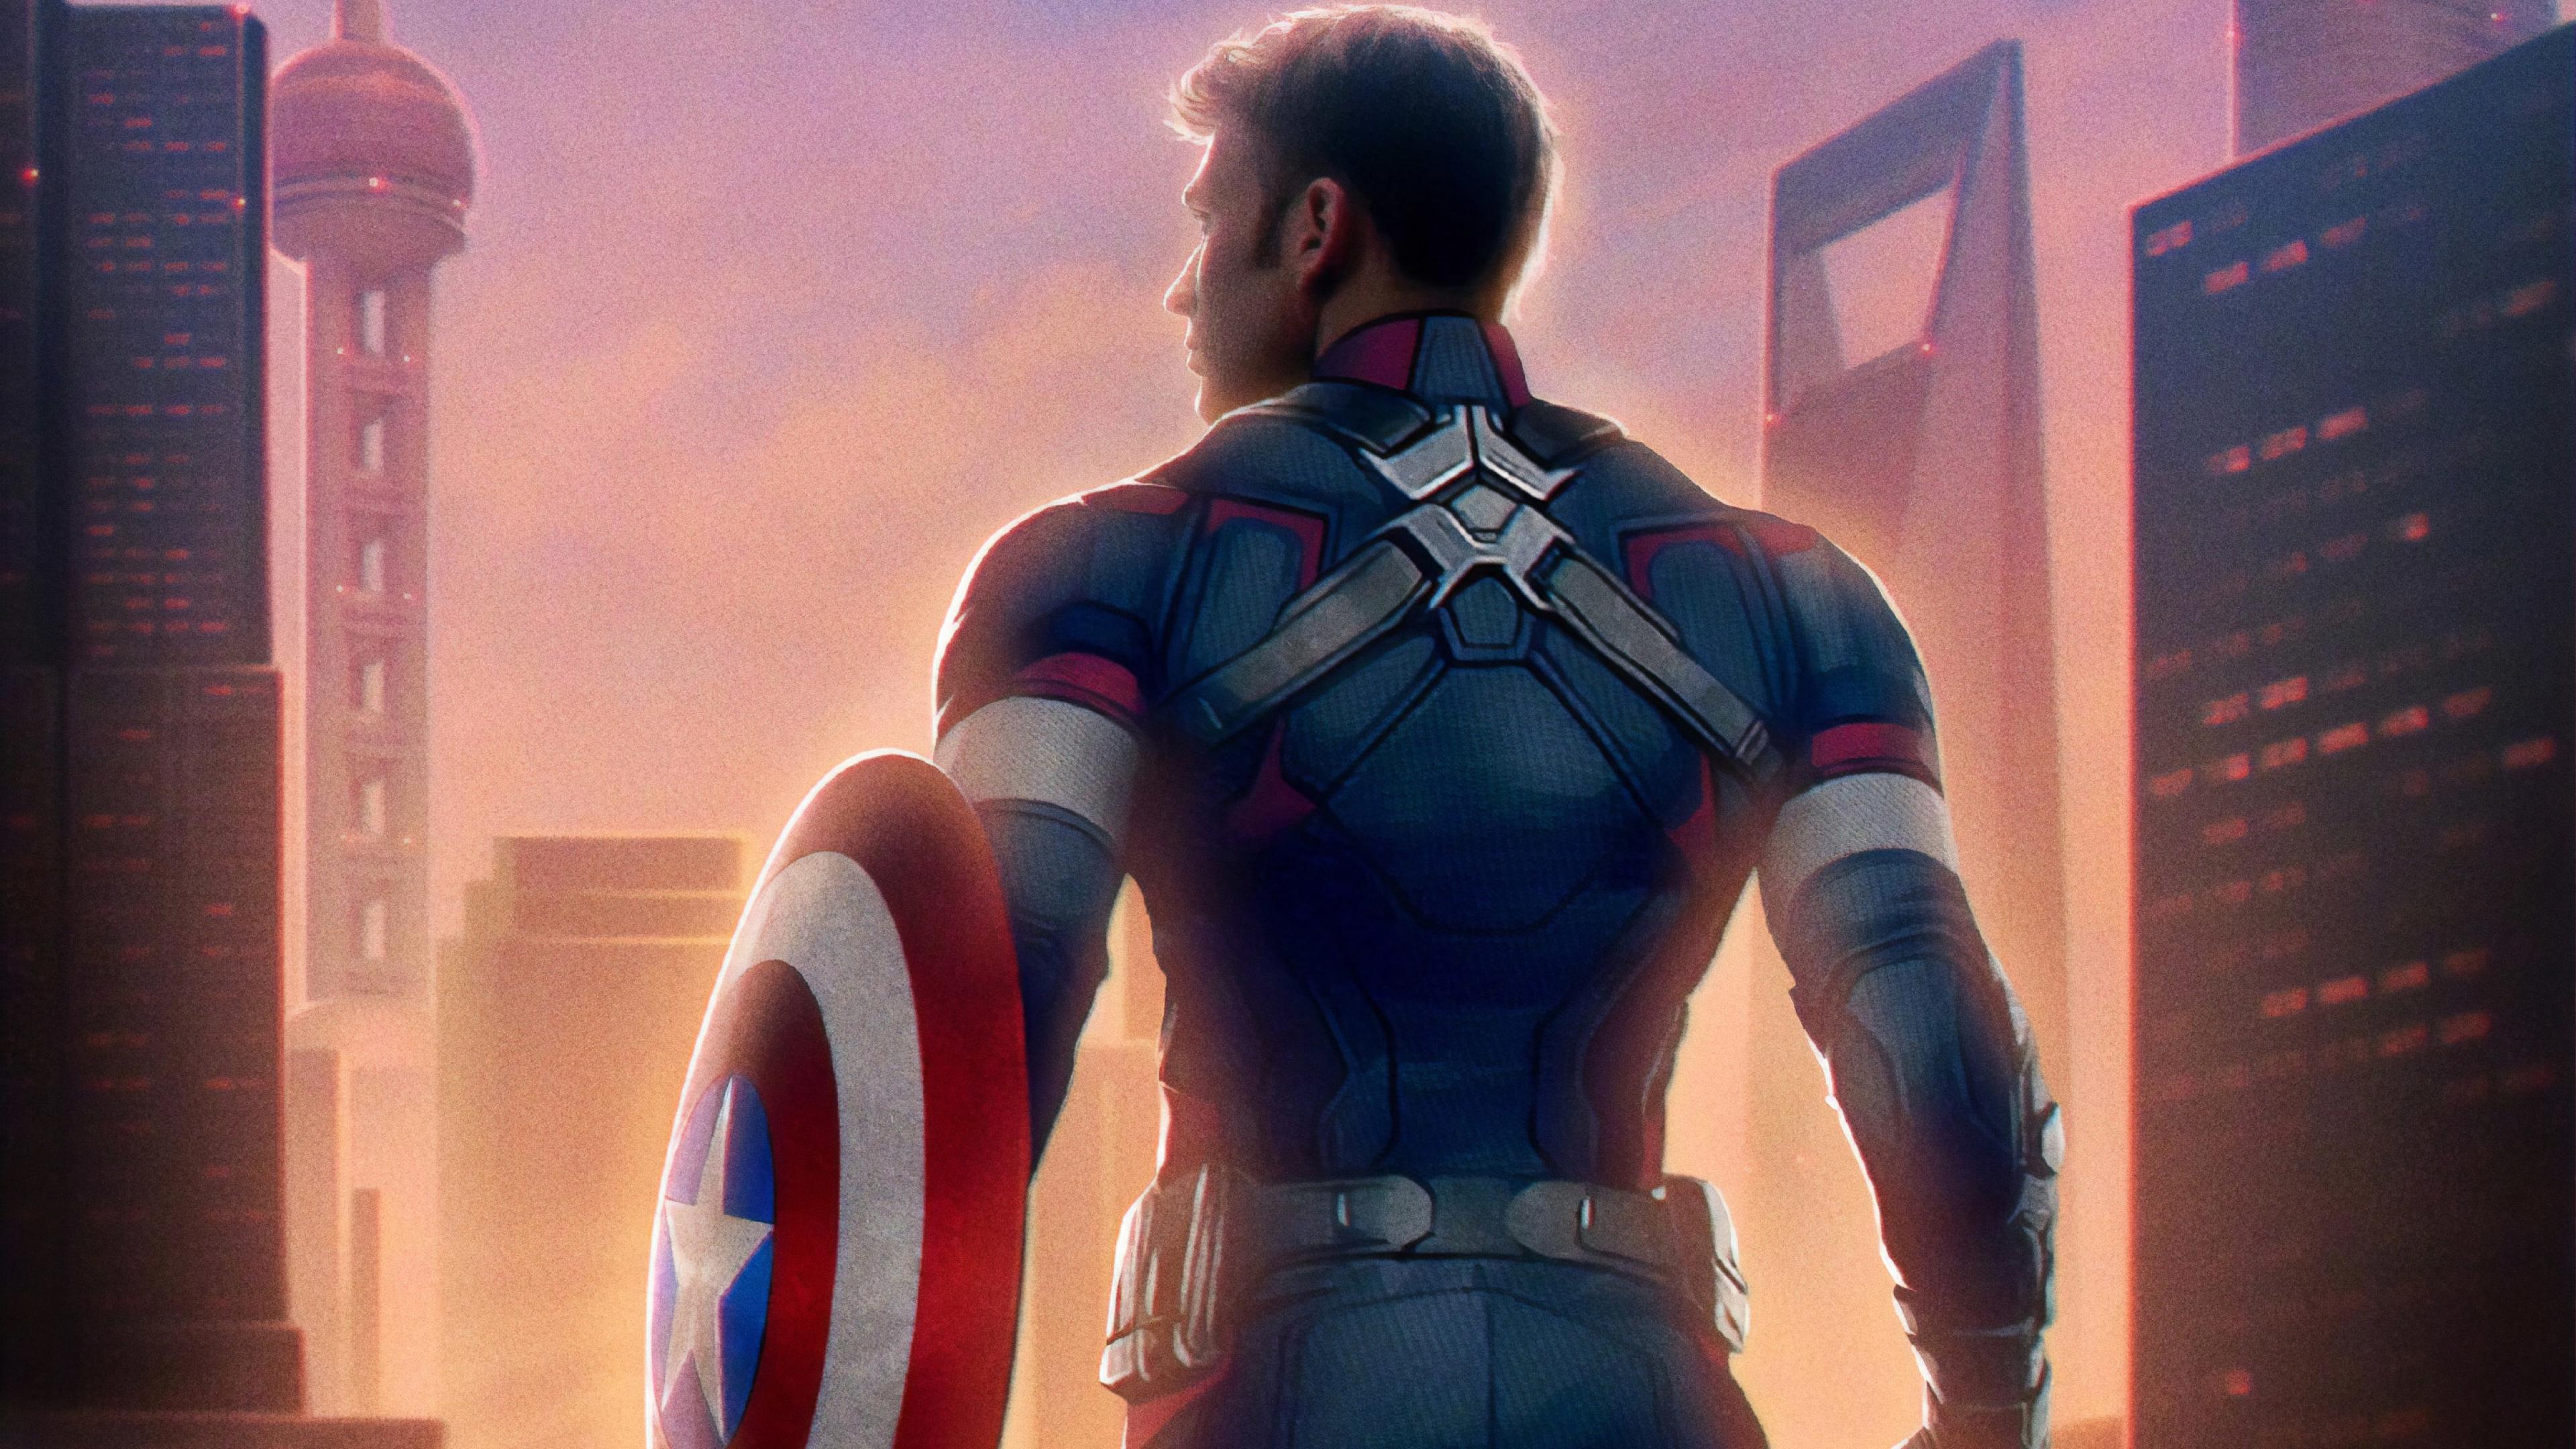 Captain America Avengers Endgame 4K Wallpaper, HD Movies